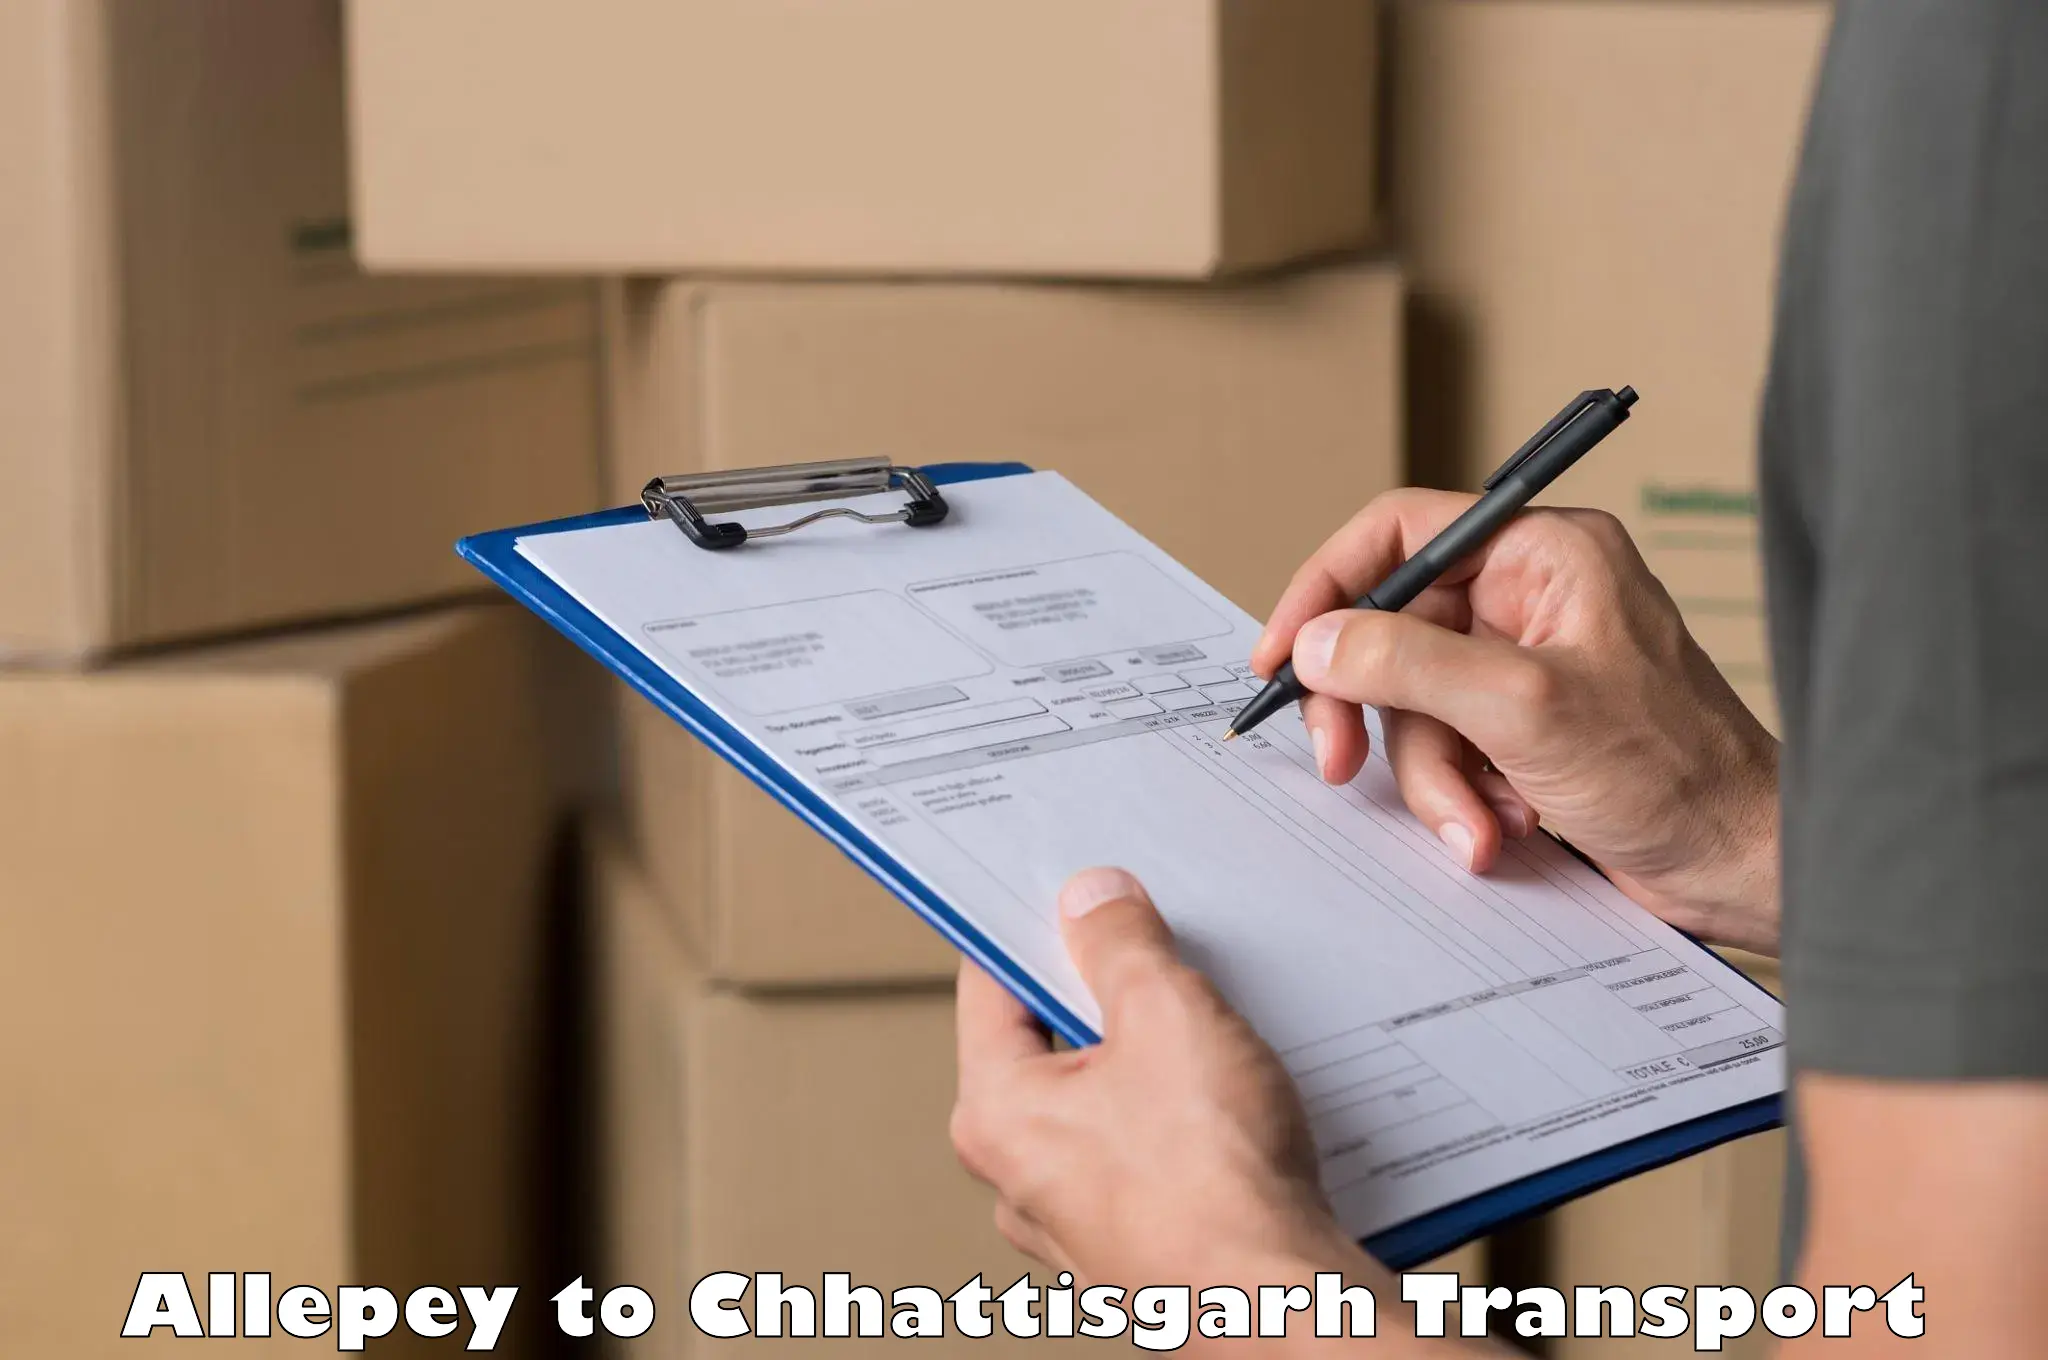 Cargo transport services Allepey to Bijapur Chhattisgarh